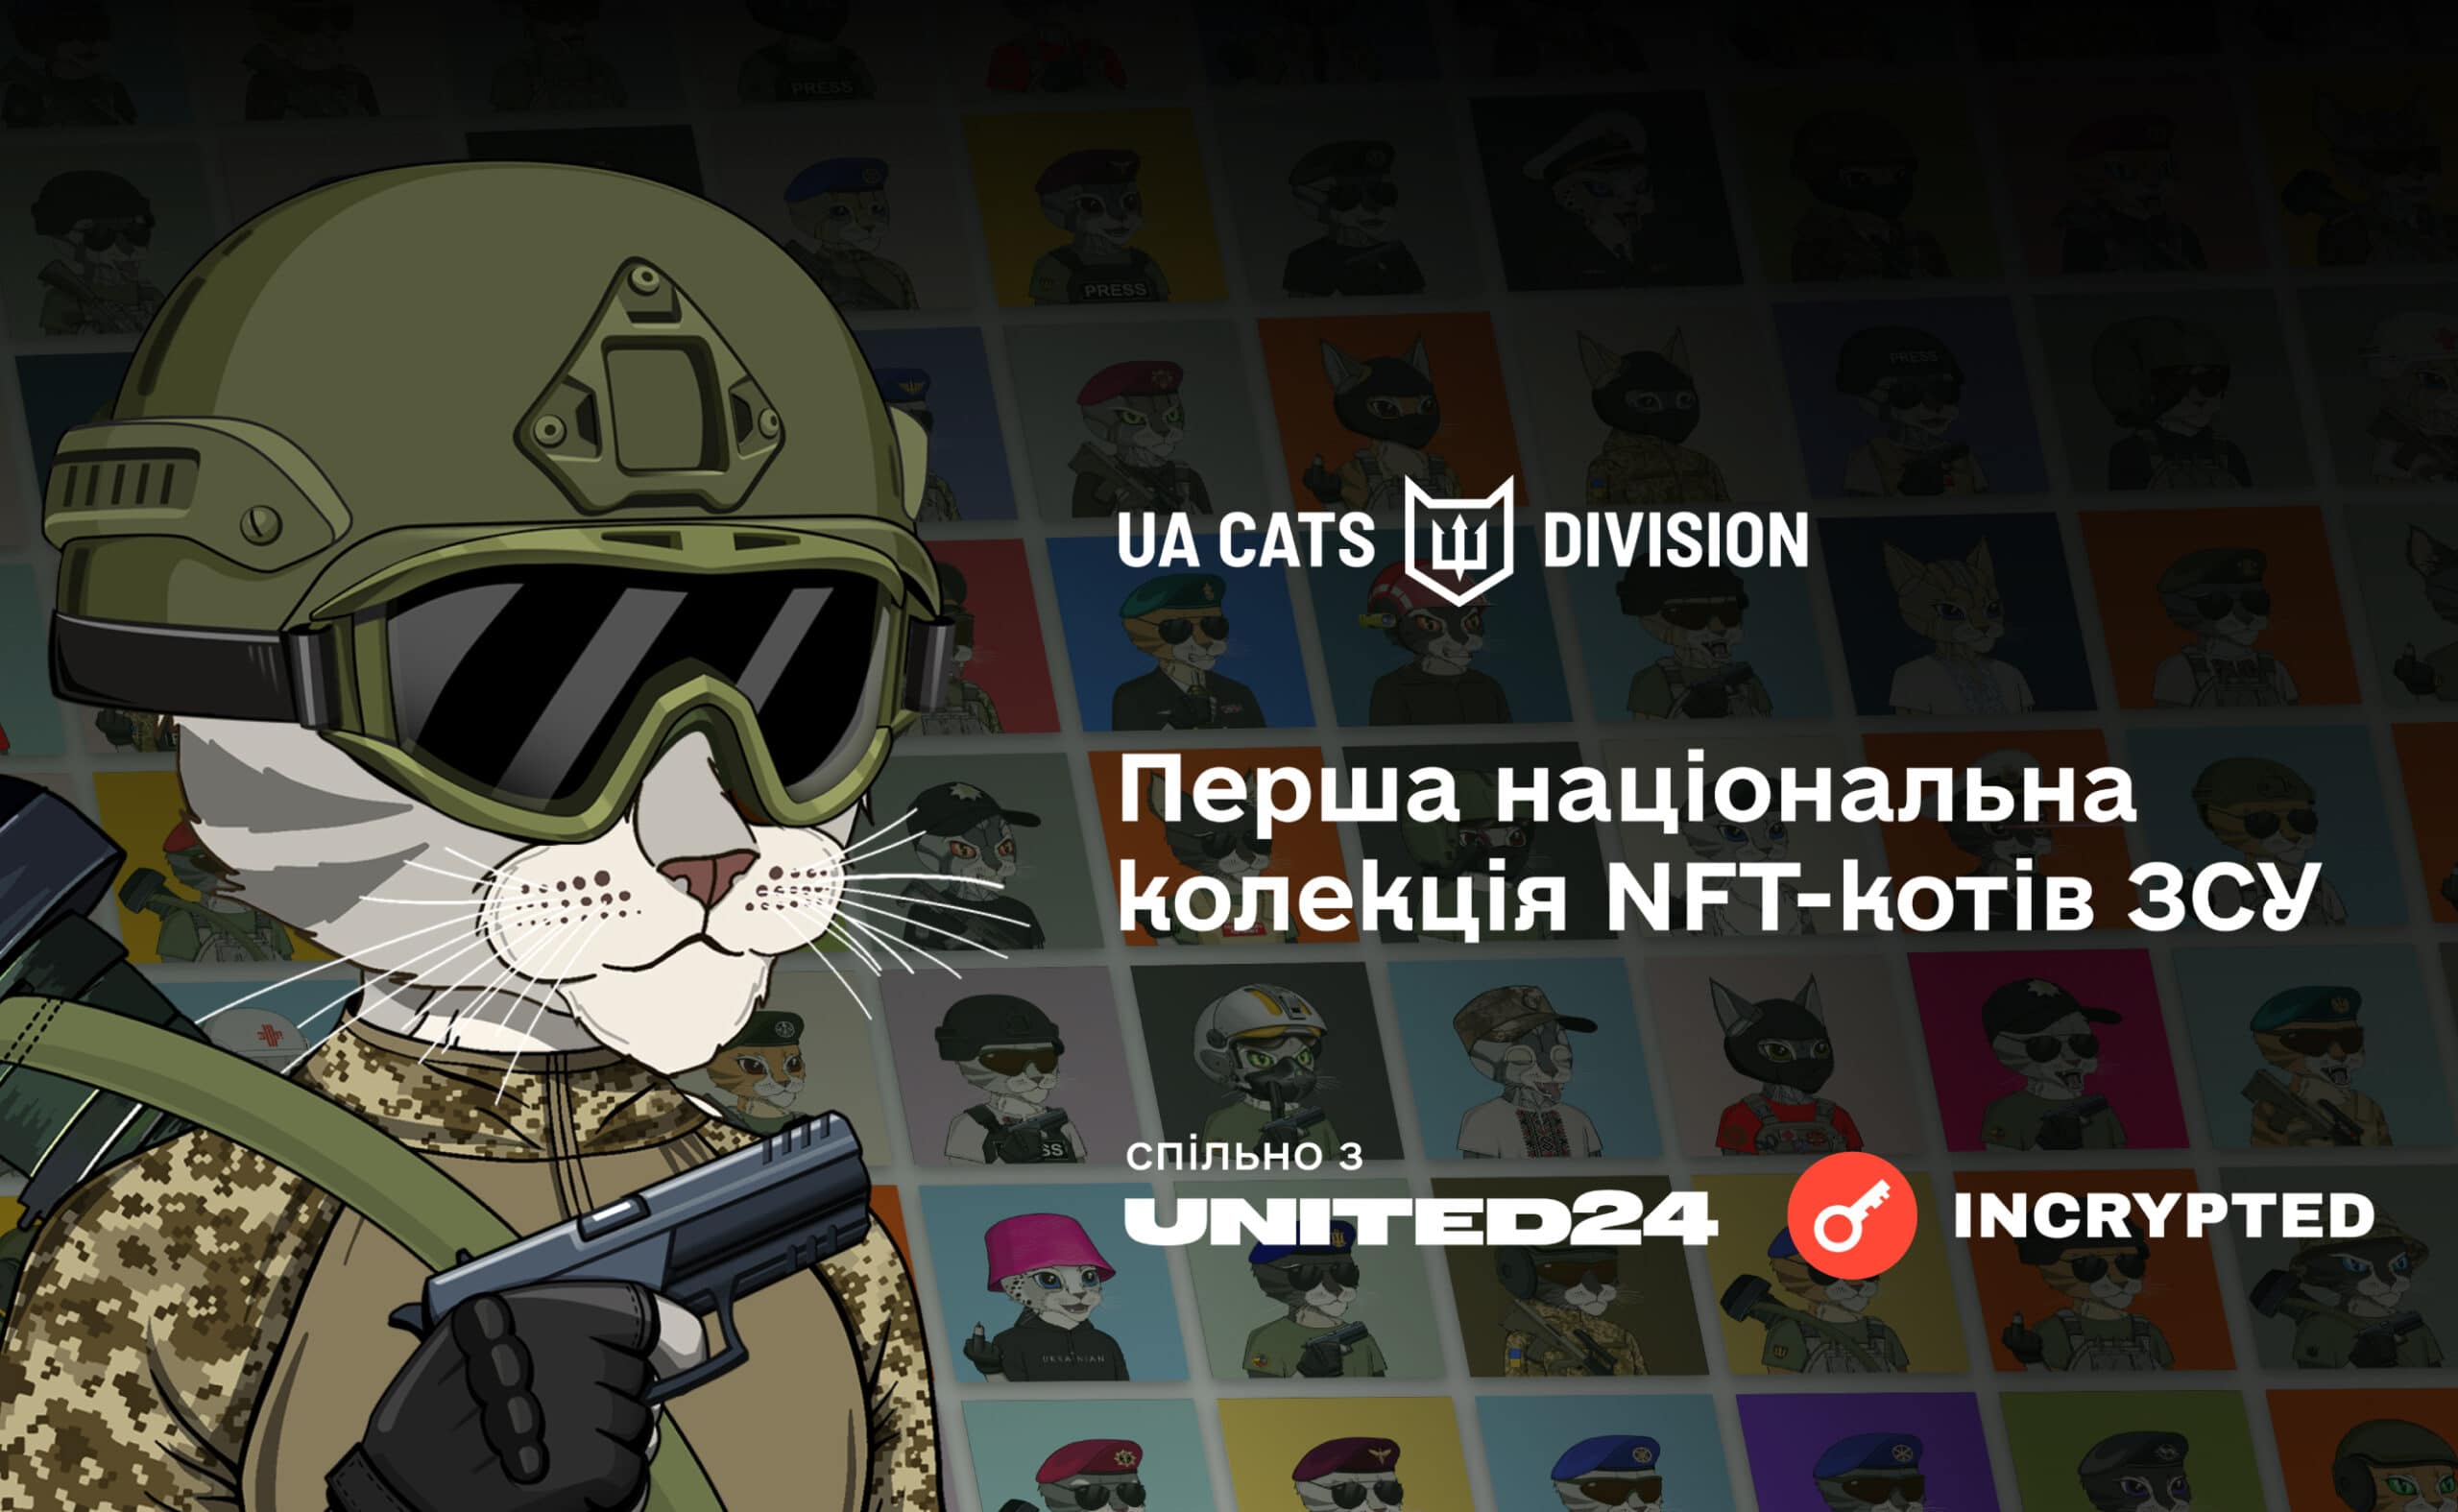 Первая национальная коллекция NFT-котов ВСУ поможет собрать 40 миллионов гривен на флот морских дронов через UNITED24. Заглавный коллаж новости.